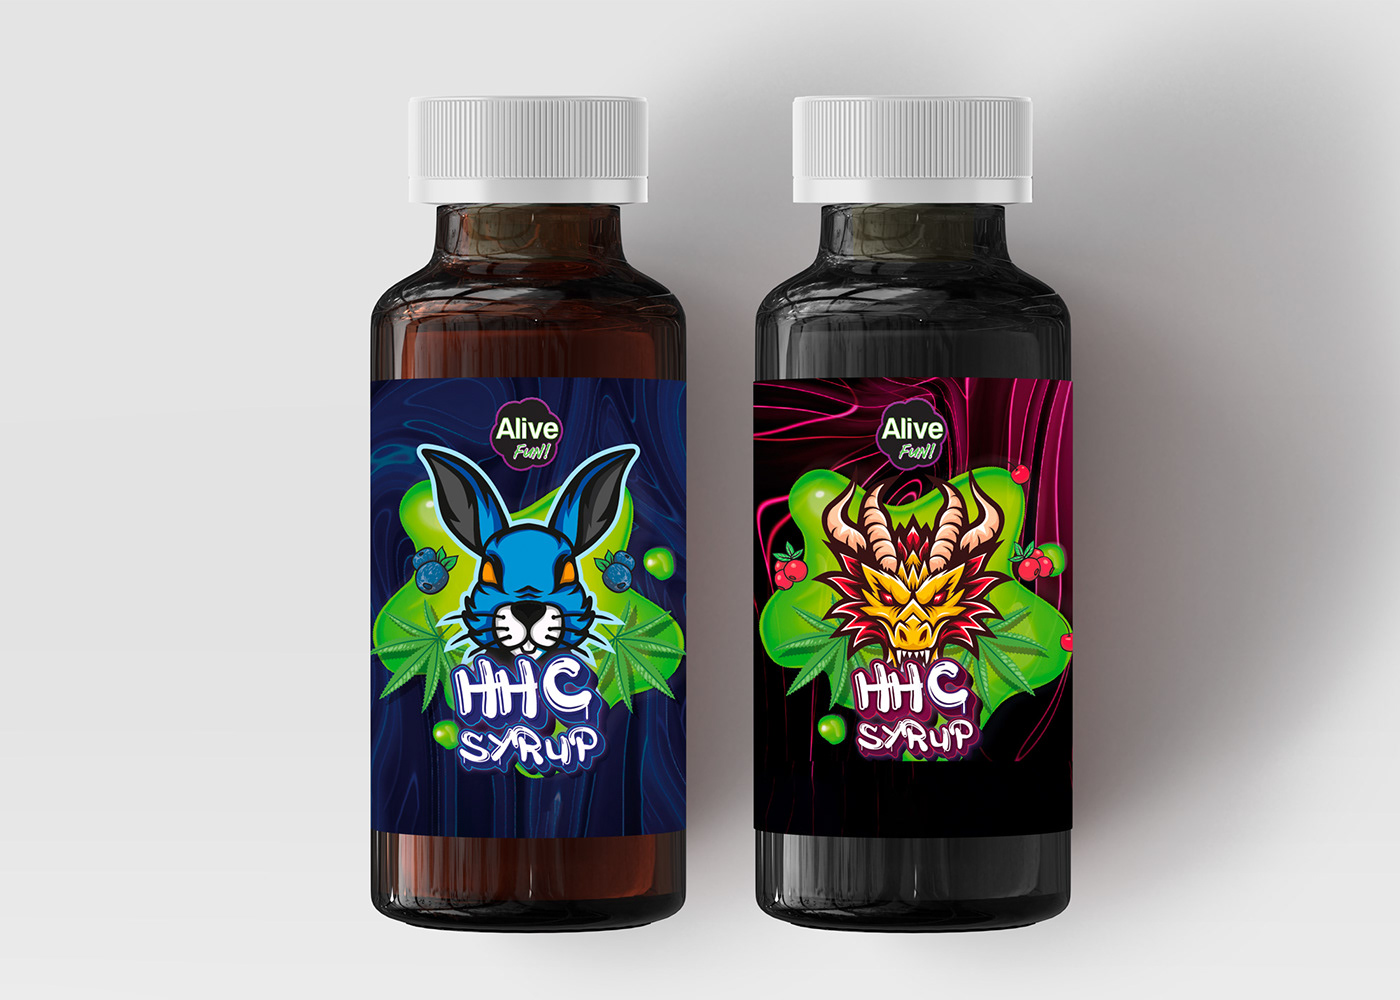 Diseño de etiquetas para los nuevos productos de la empresa Alive en sabor cereza y mora.